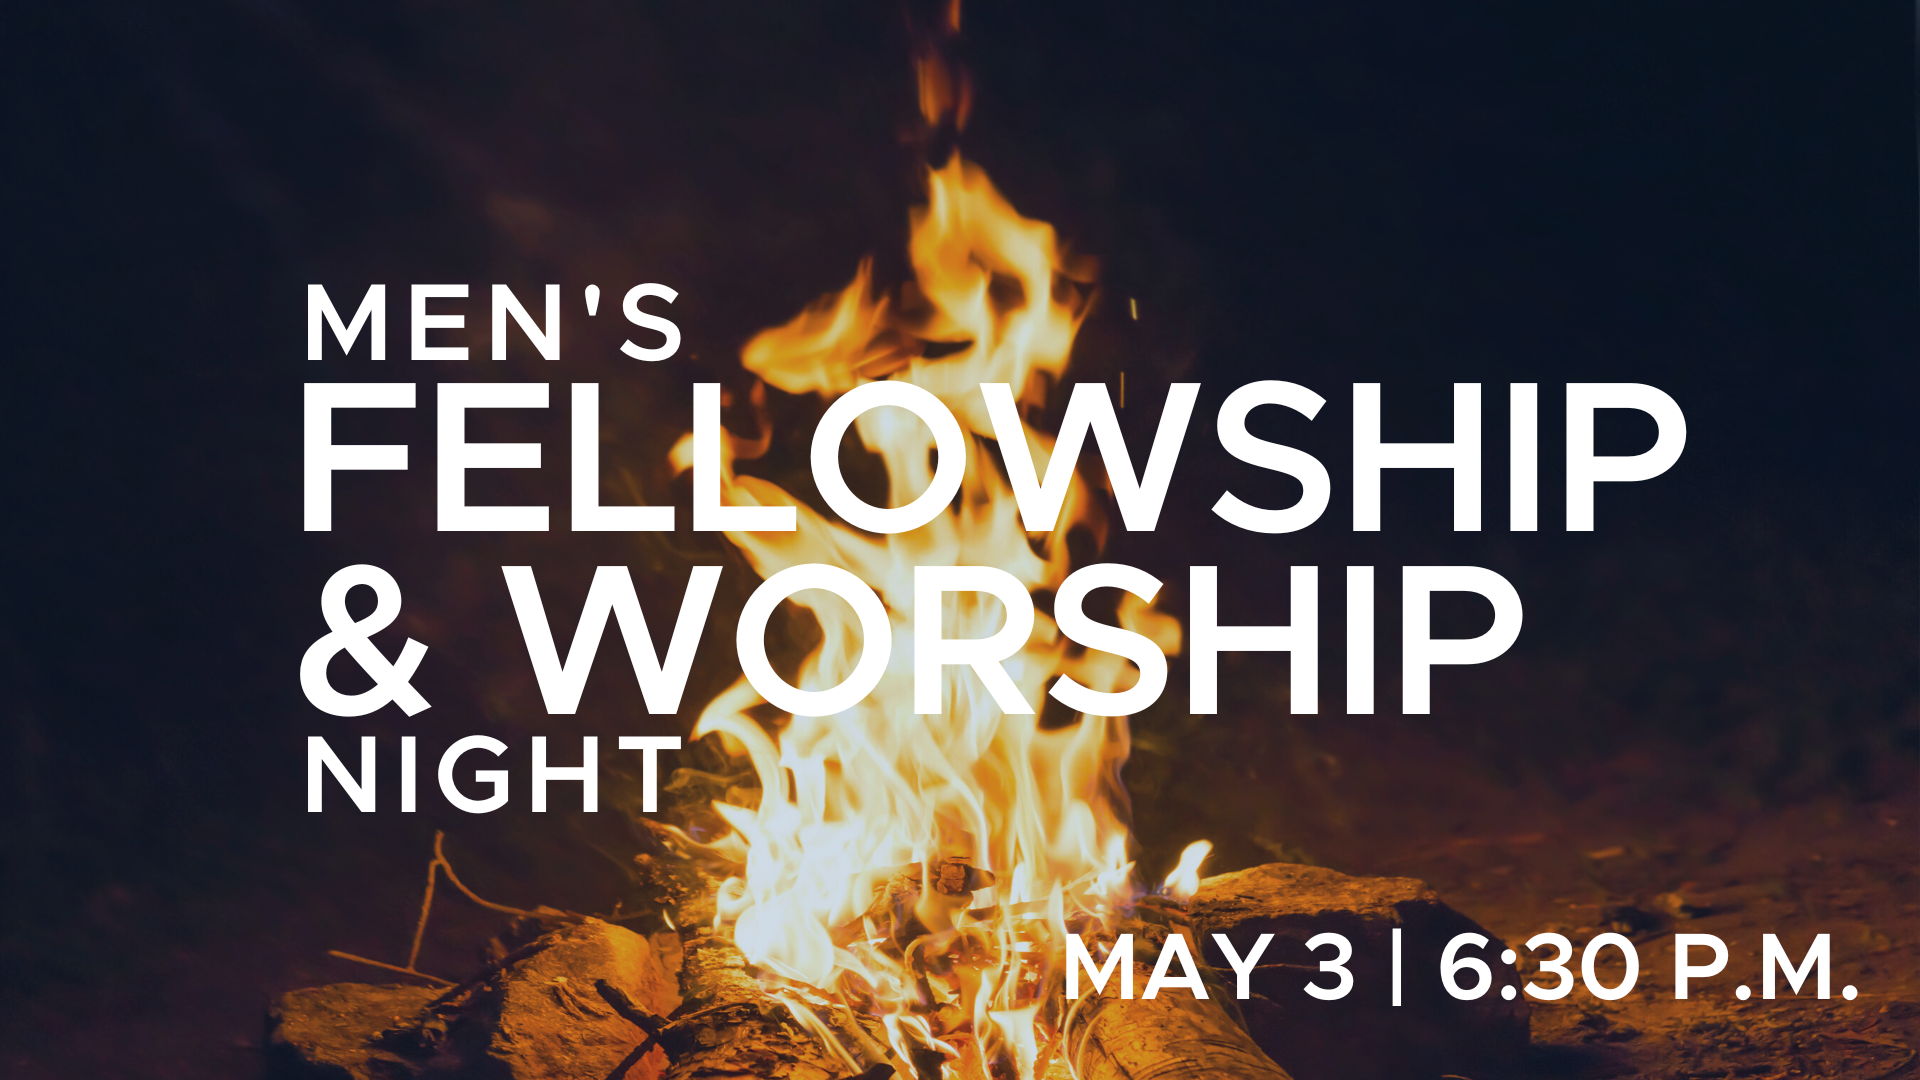 Men's Fellowship & Worship Night